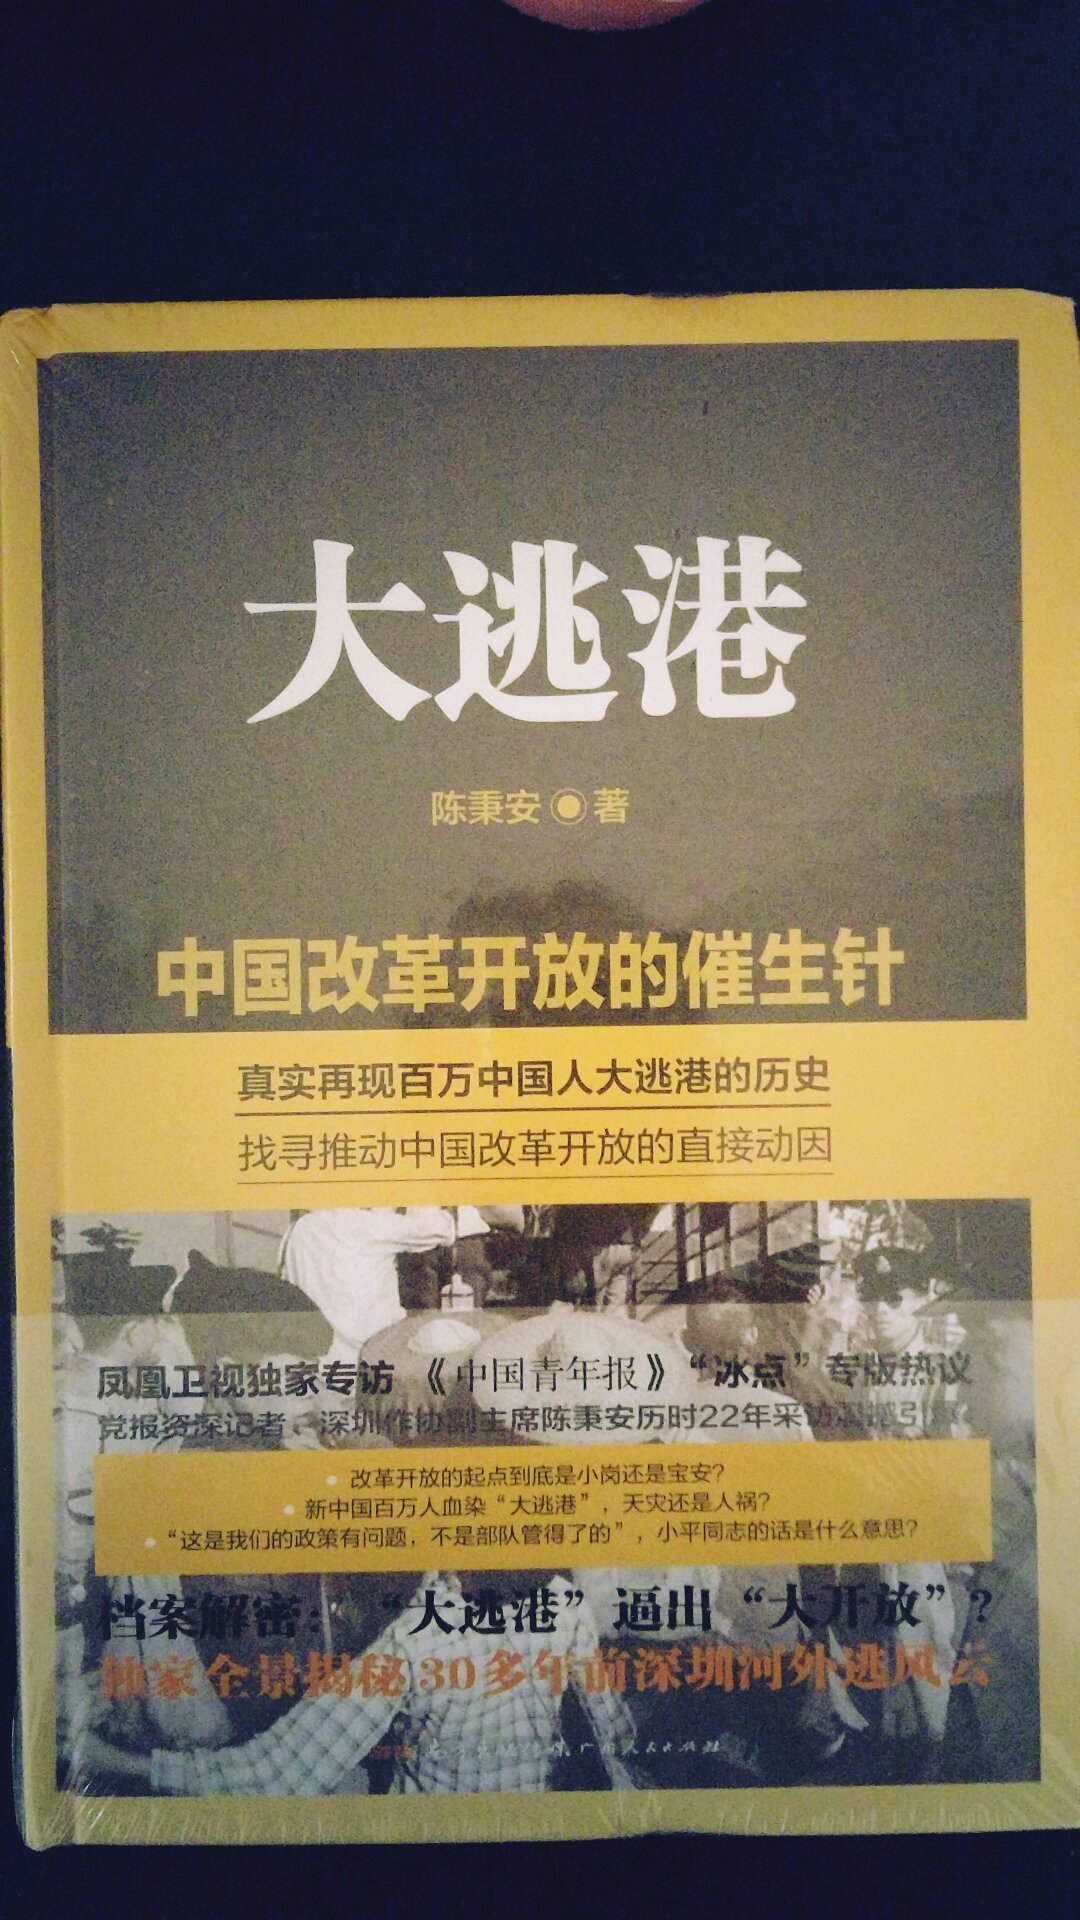 本书全景还原了40多年前深圳的外逃风云，上百万人逃港#出了后来的开放，历史值得铭记。